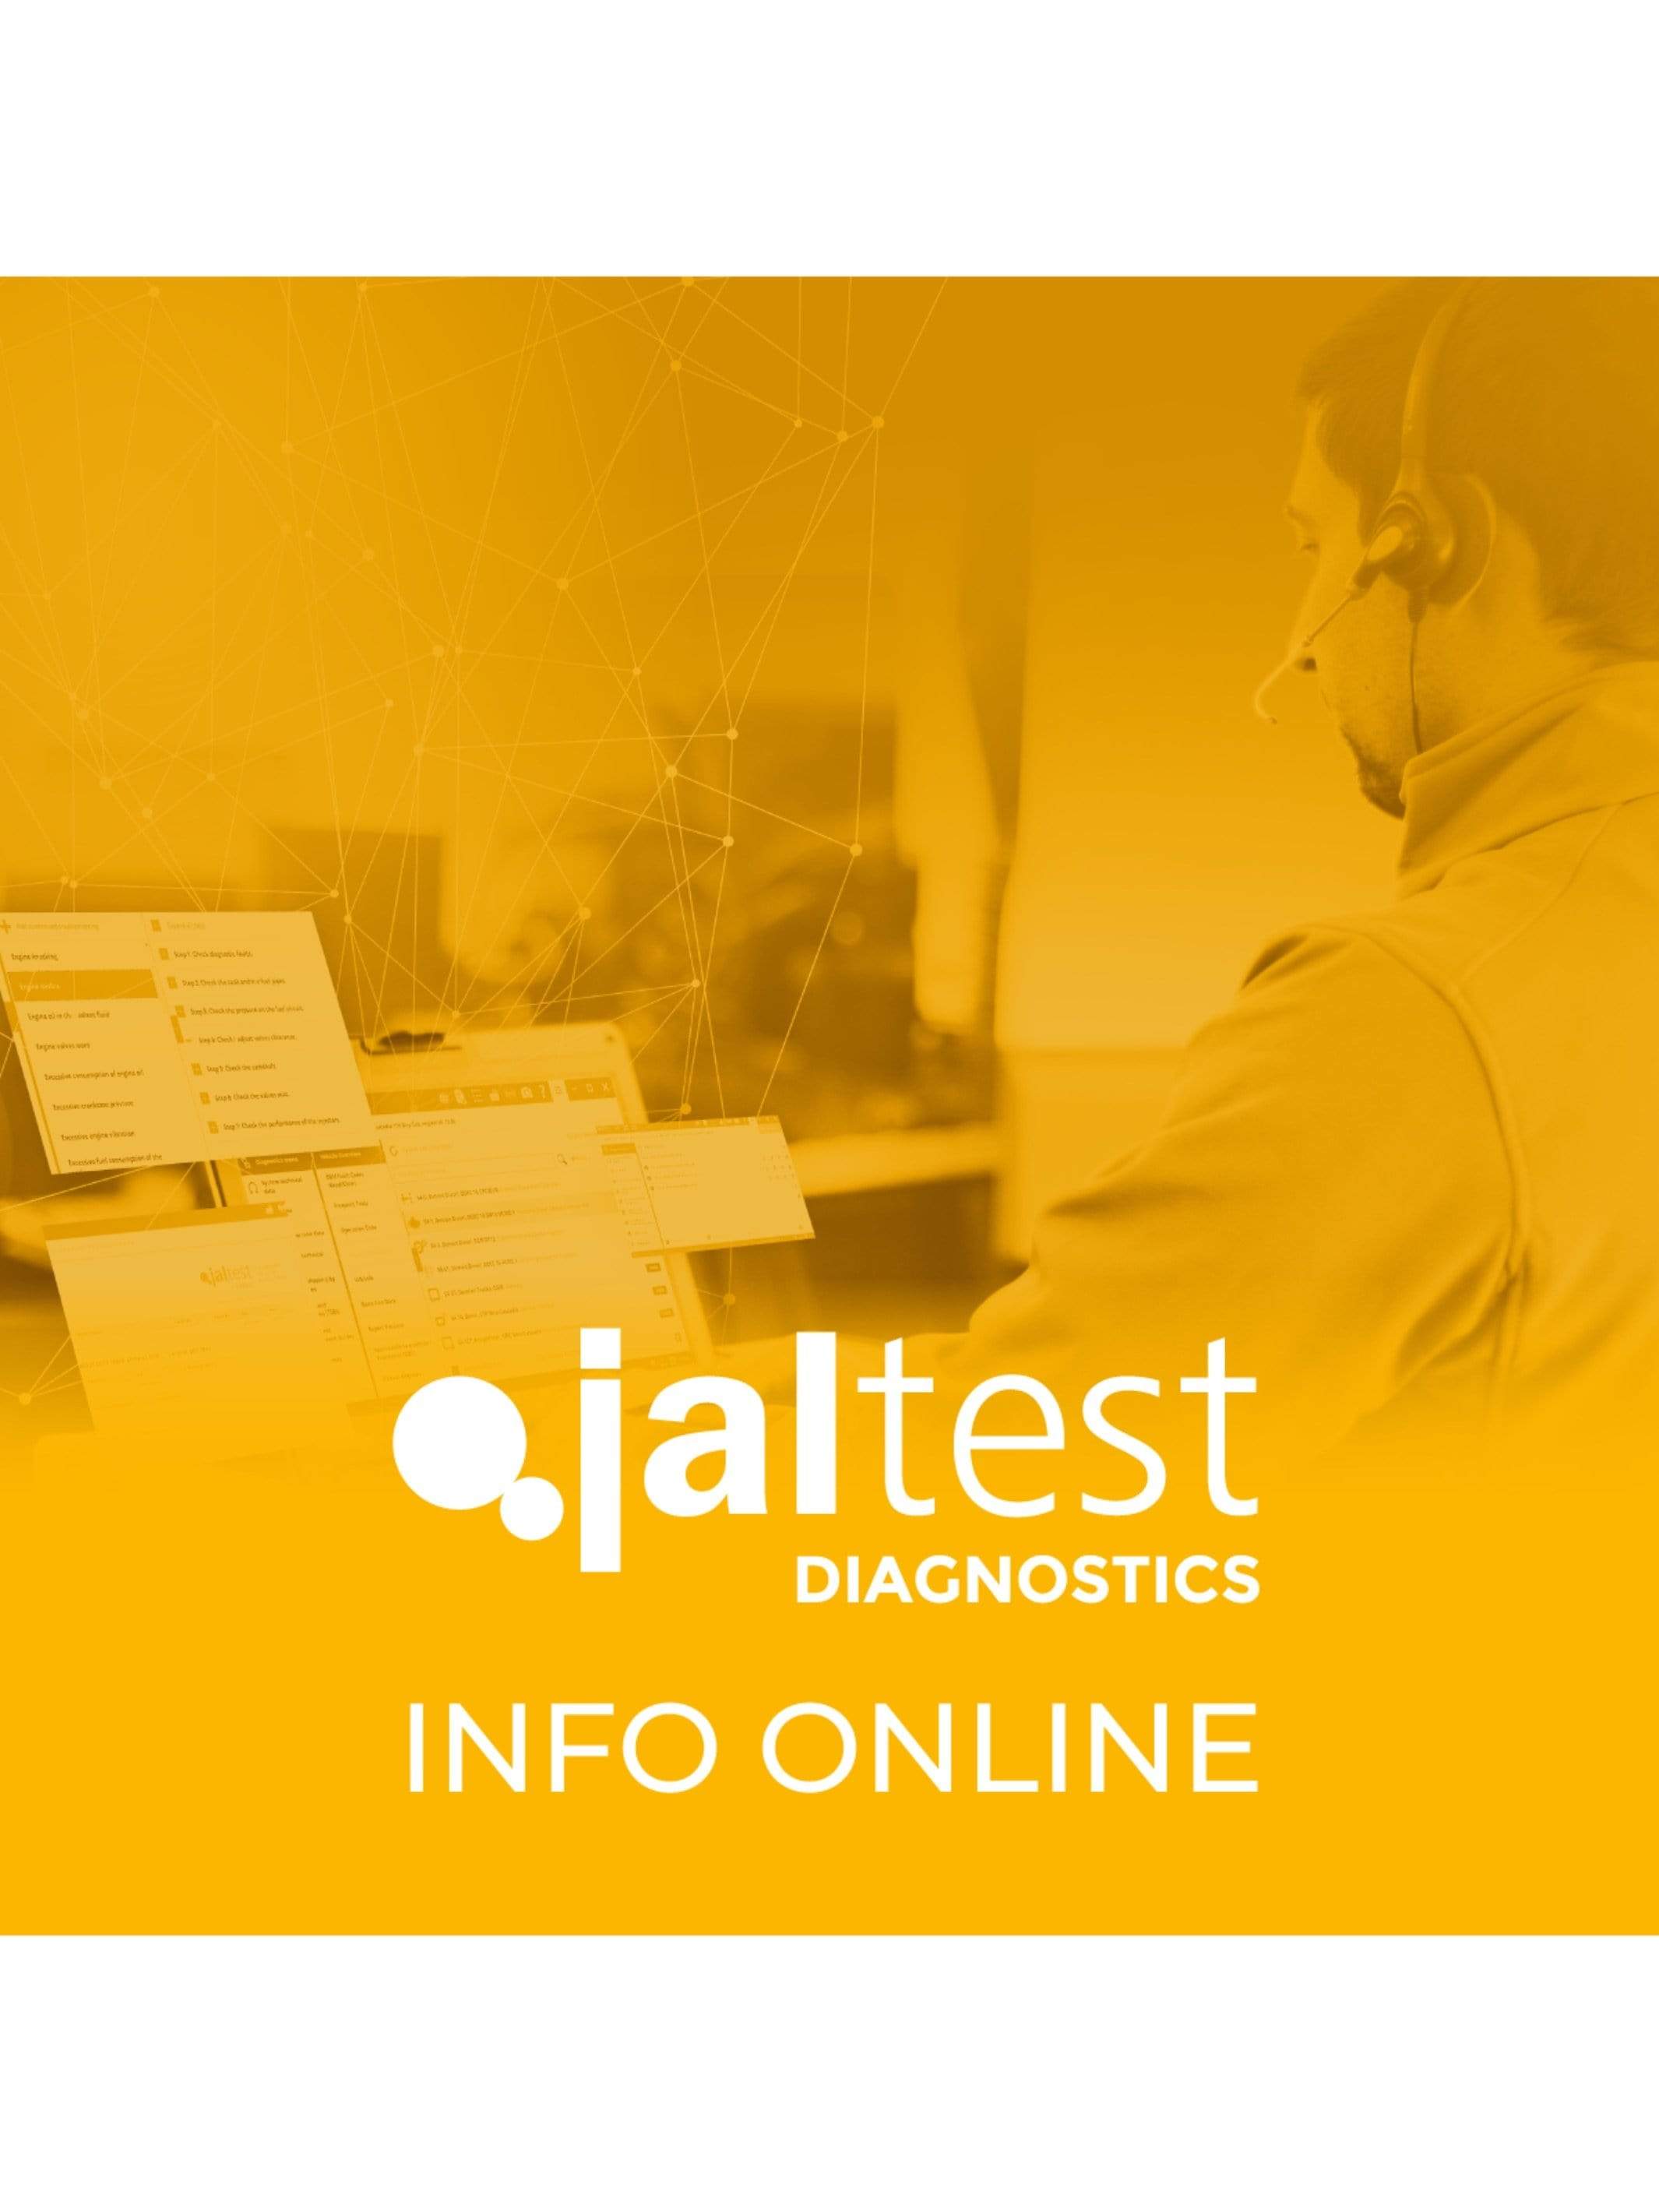 Jaltest OHW Diagnostic Info Online Support - Jaltest Construction, Off Highway, MH & Stationary Engine Diagnostic Software Tool Kit